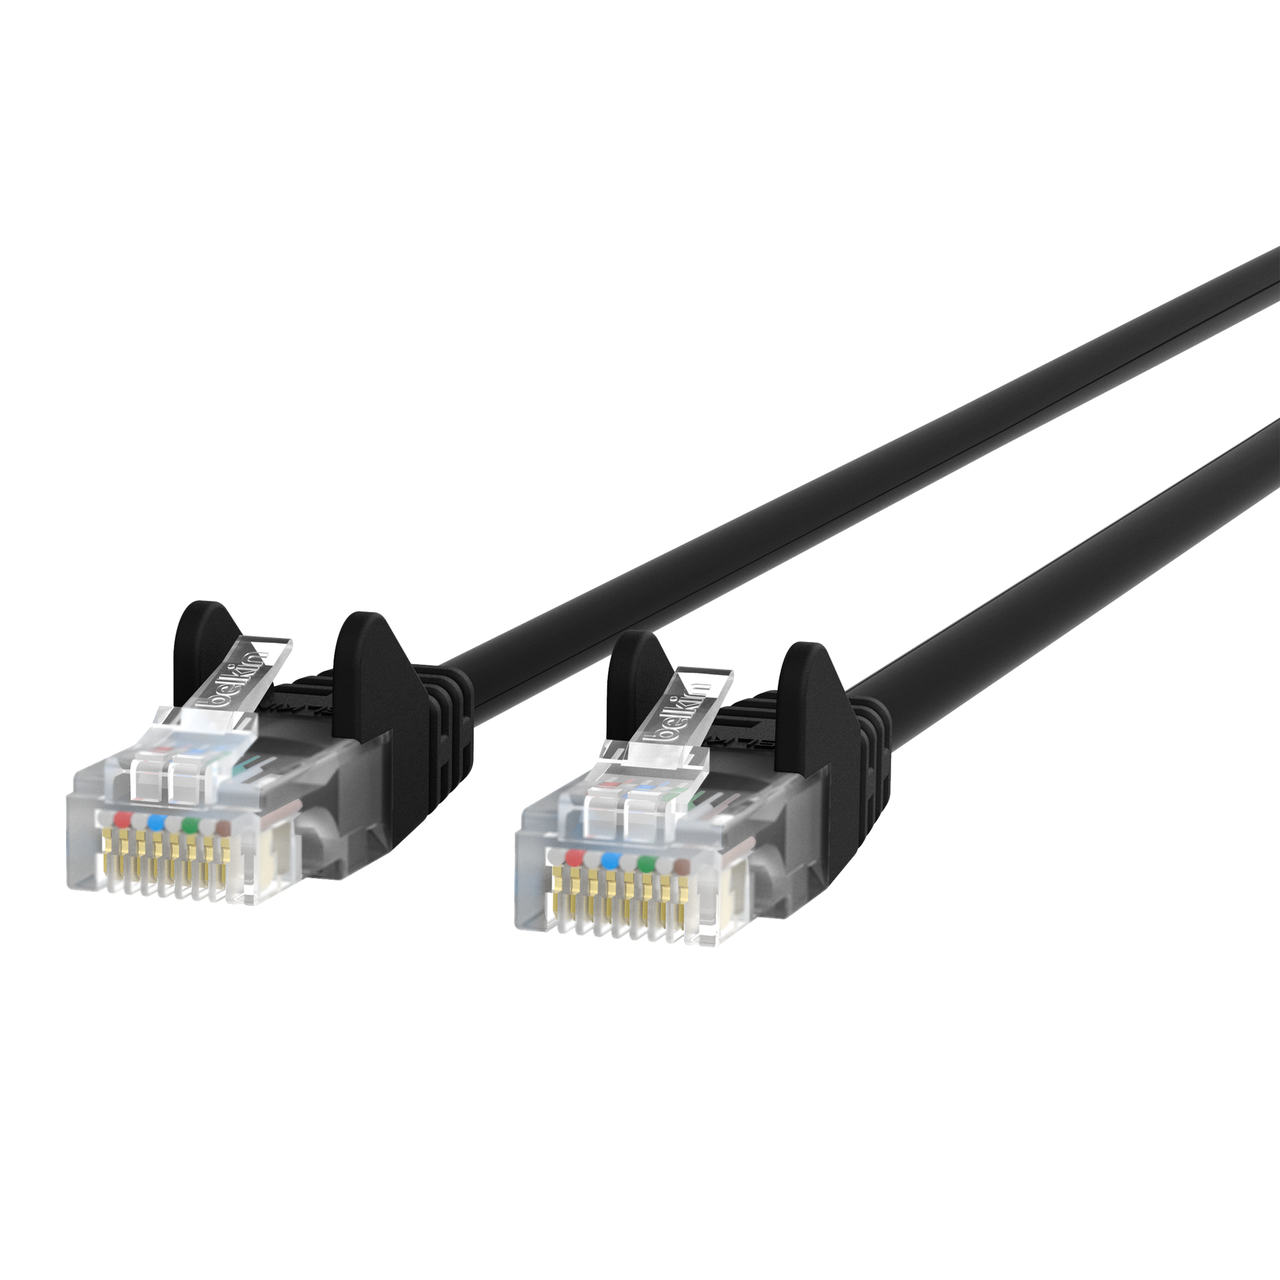 Cable de interconexión Belkin A3L791-25-negro Nuevo 